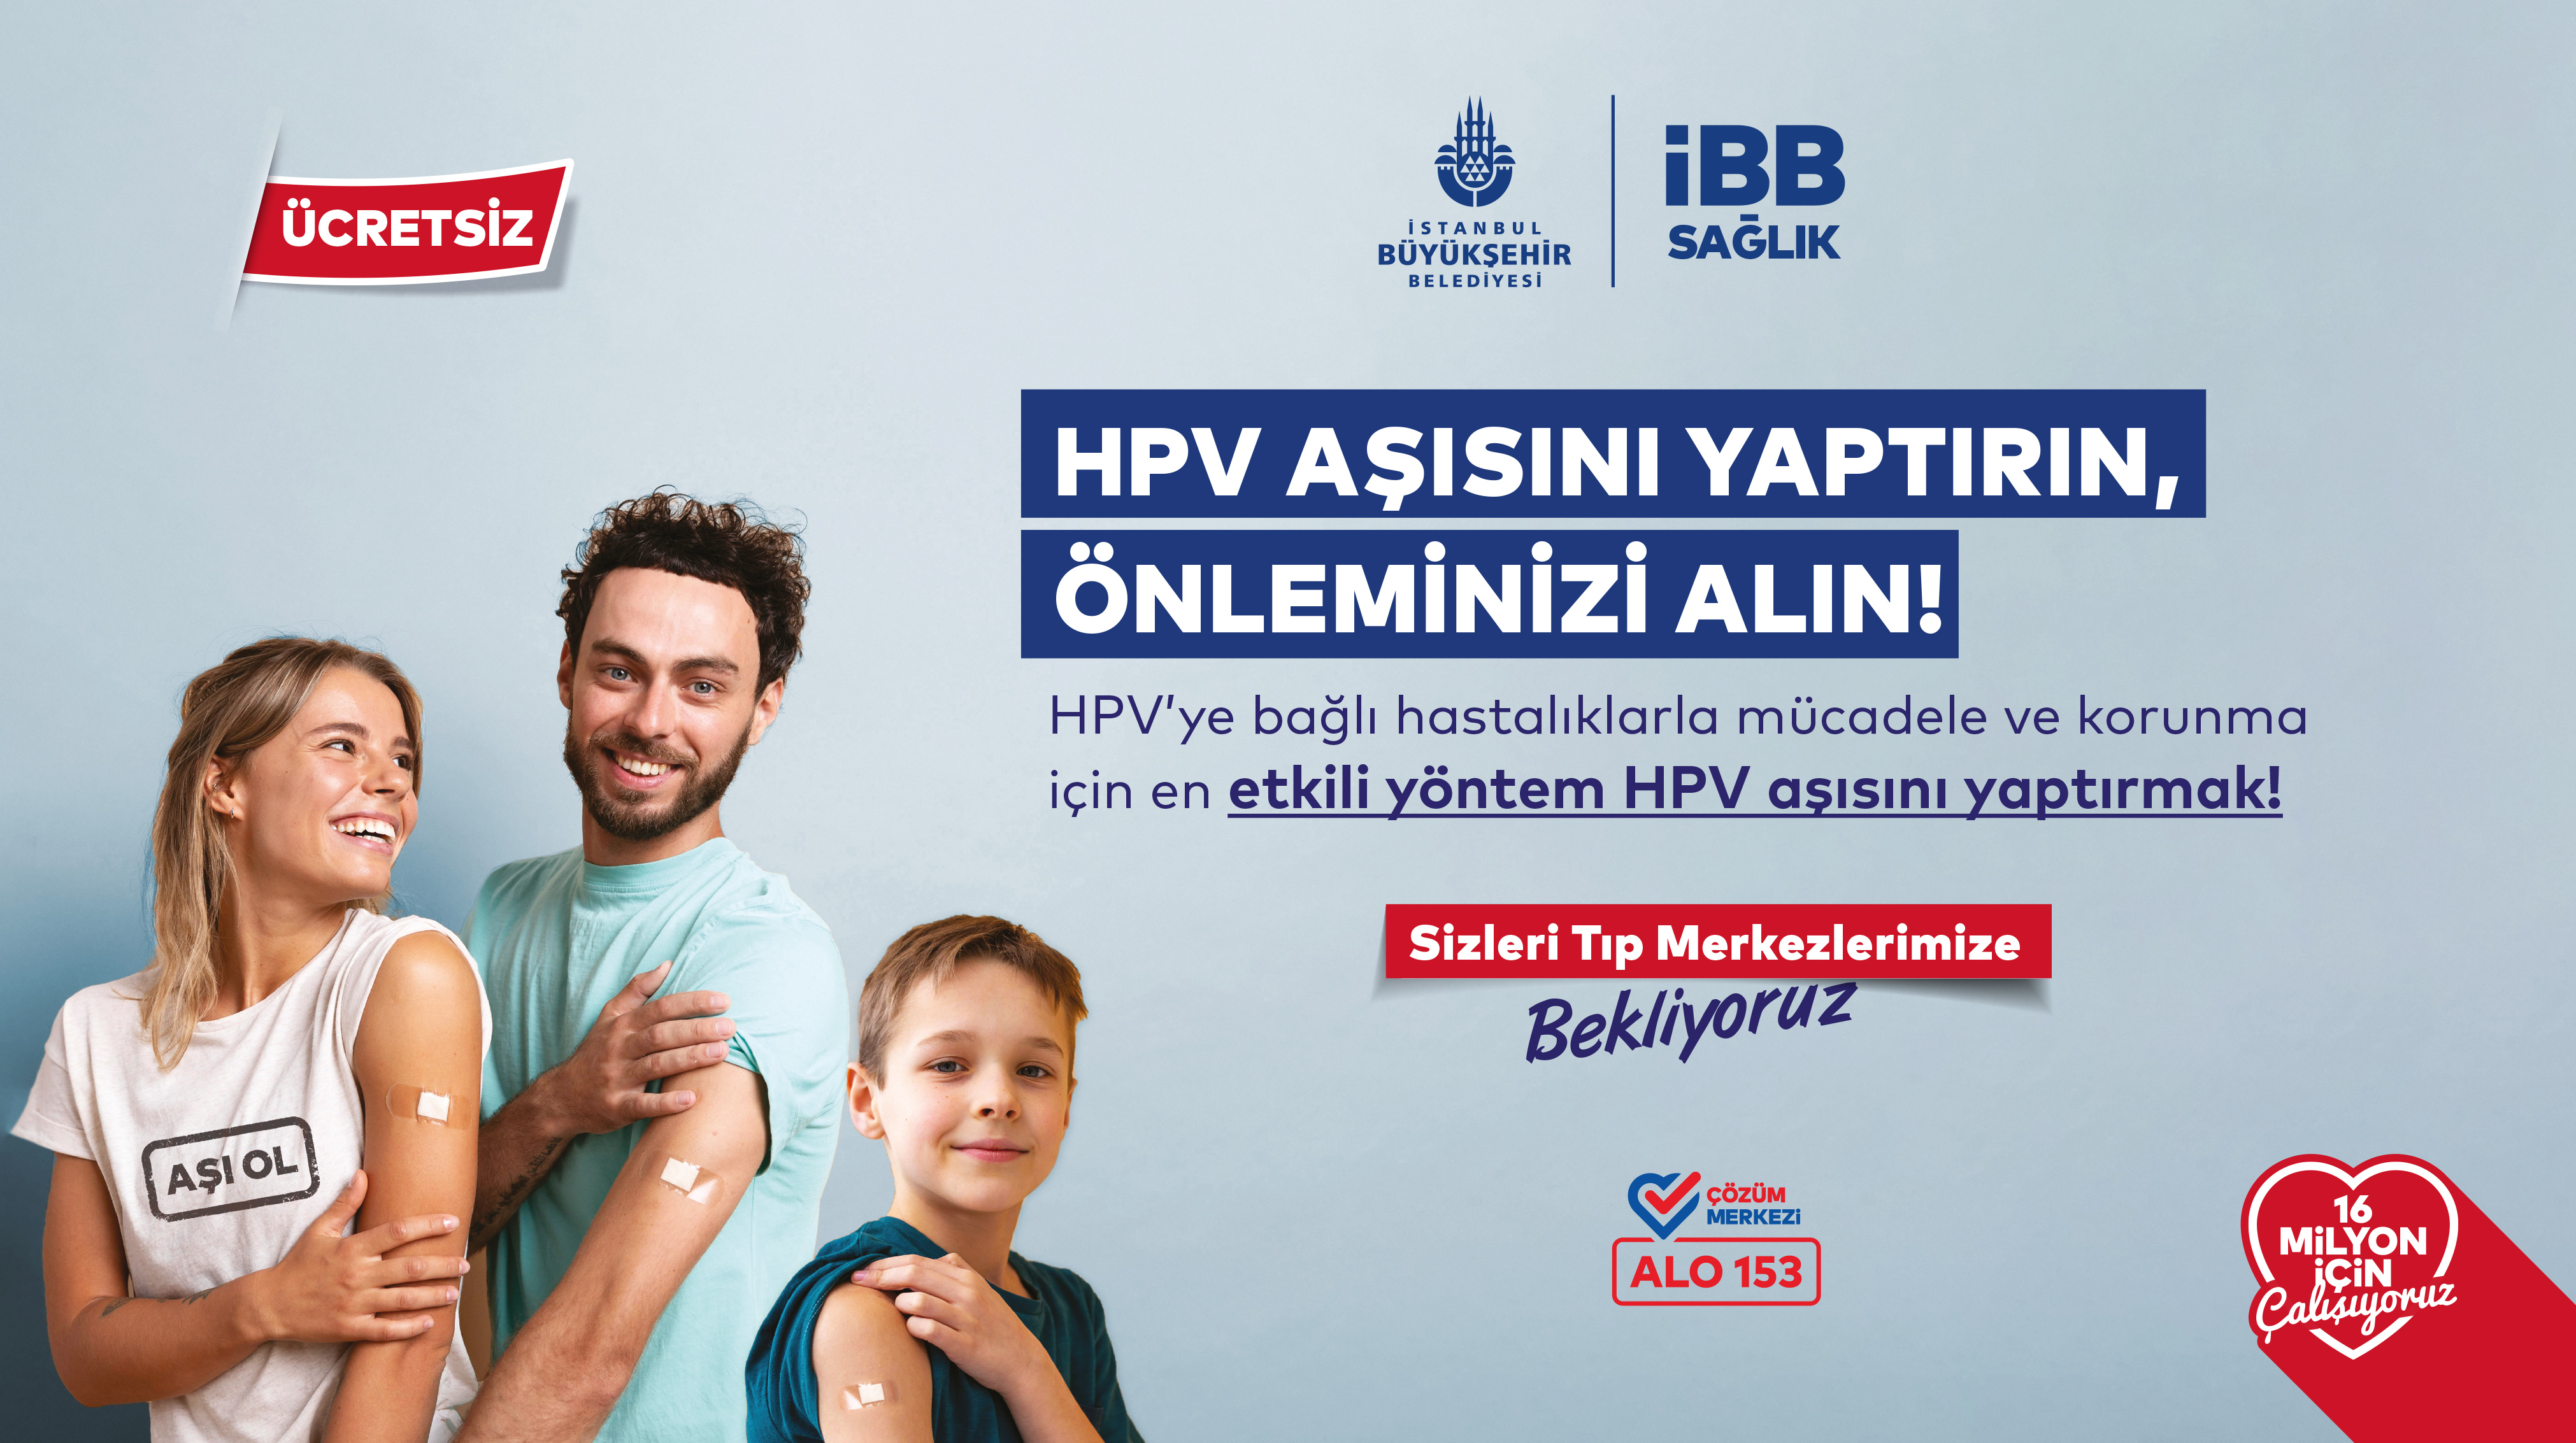 İstanbul Büyükşehir Belediyesi ücretsiz HPV aşısı başlattı: İşte detaylar...